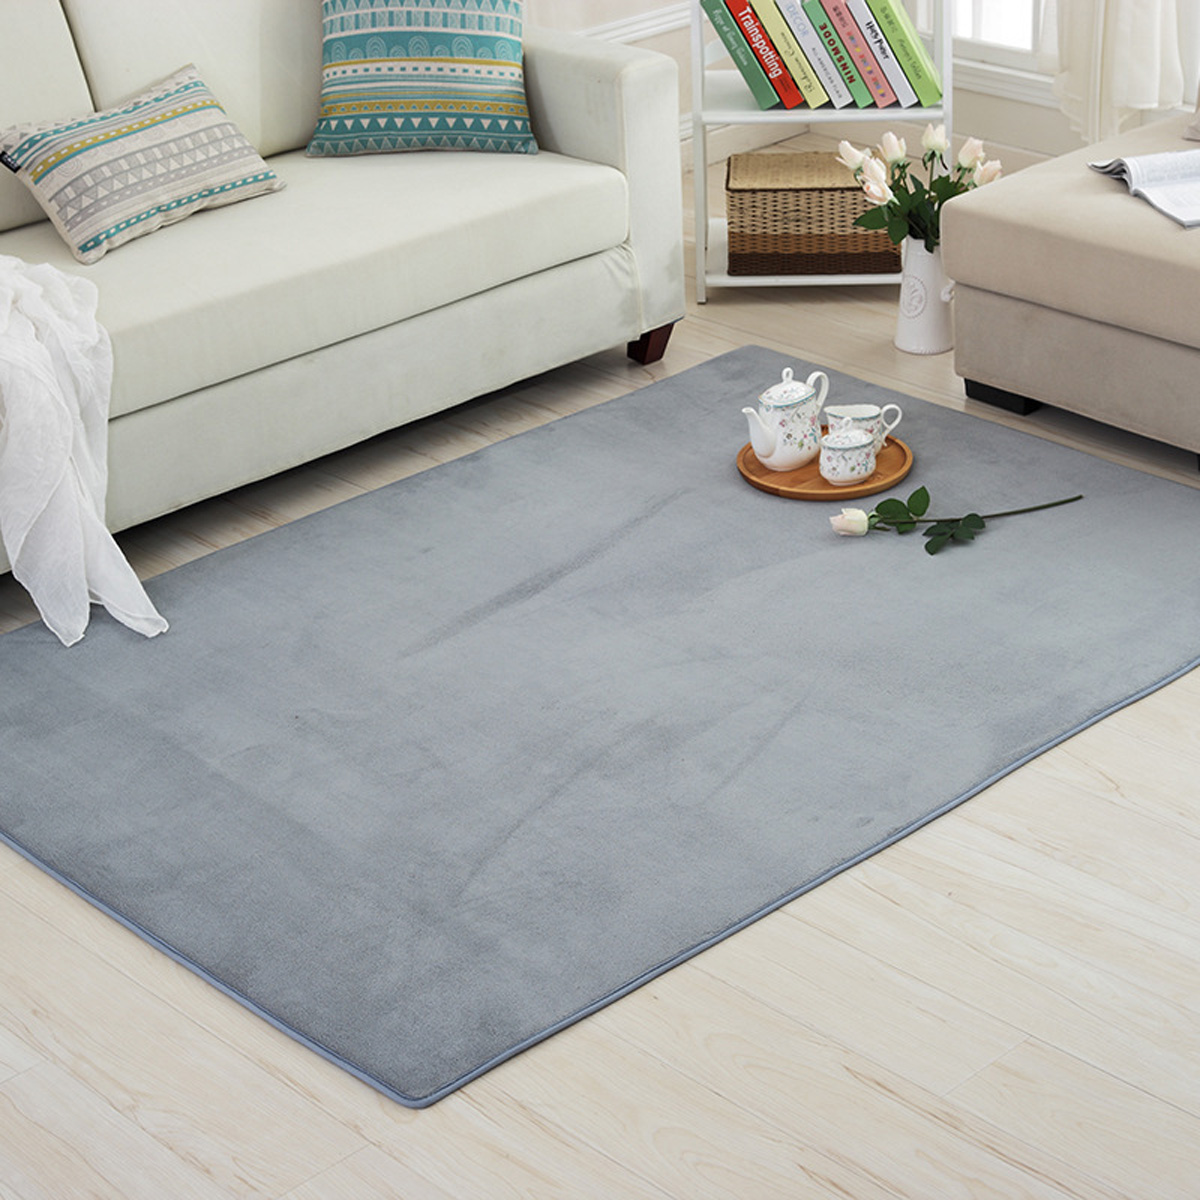 4-Sizes-Carpet-Modern-Living-Room-Area-Carpet-Bedroom-Bedside-Rug-Home-Decoration-1637671-5